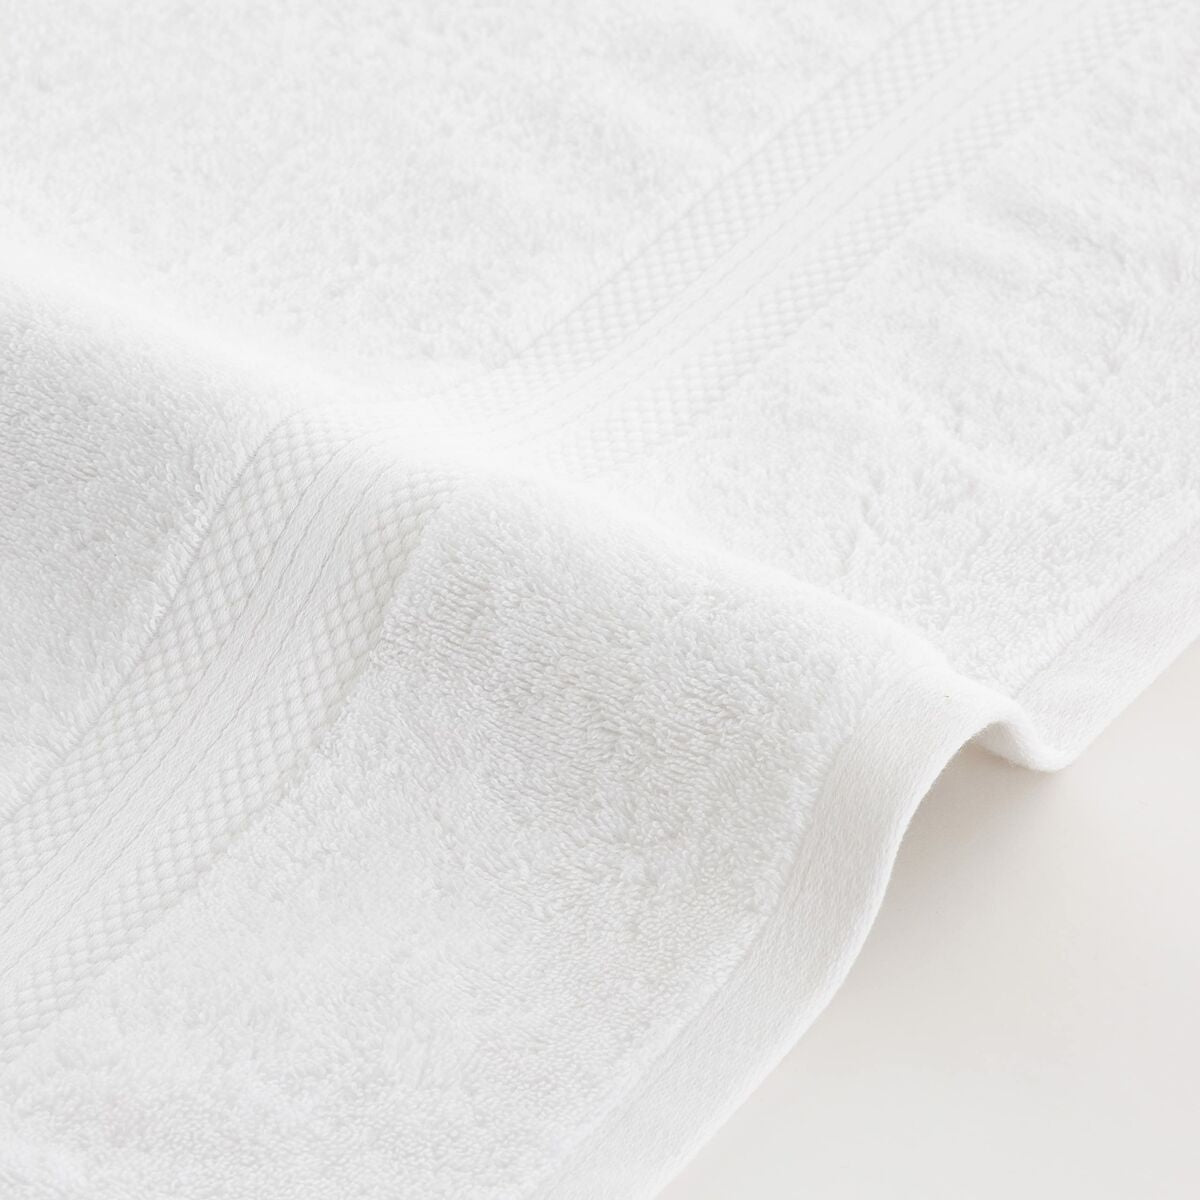 Bath towel SG Hogar White 100x 150 cm